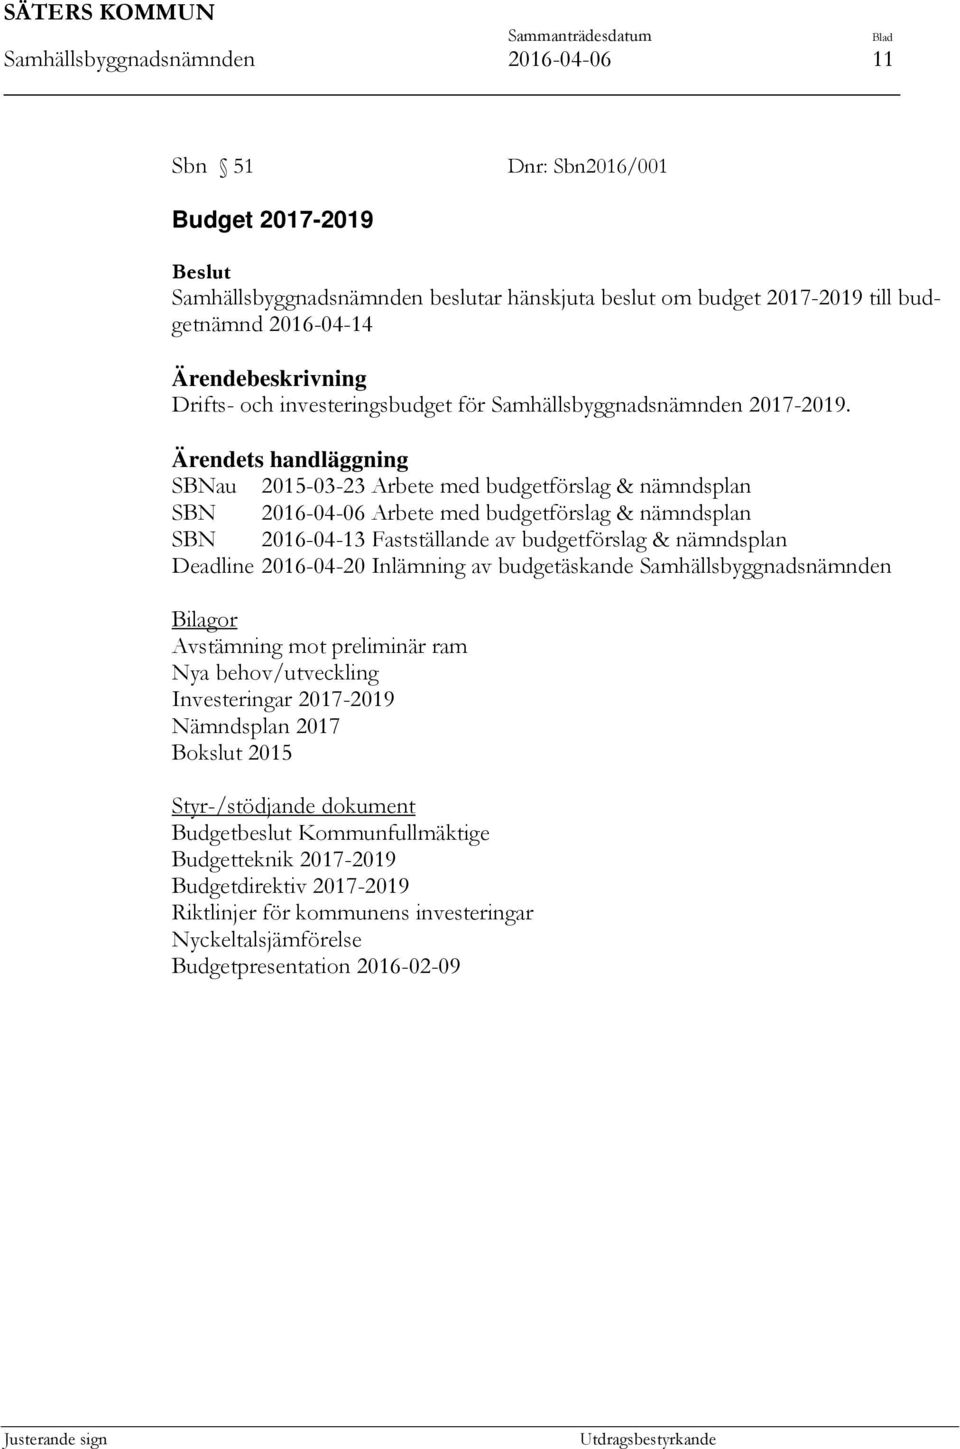 Ärendets handläggning SBNau 2015-03-23 Arbete med budgetförslag & nämndsplan SBN 2016-04-06 Arbete med budgetförslag & nämndsplan SBN 2016-04-13 Fastställande av budgetförslag & nämndsplan Deadline